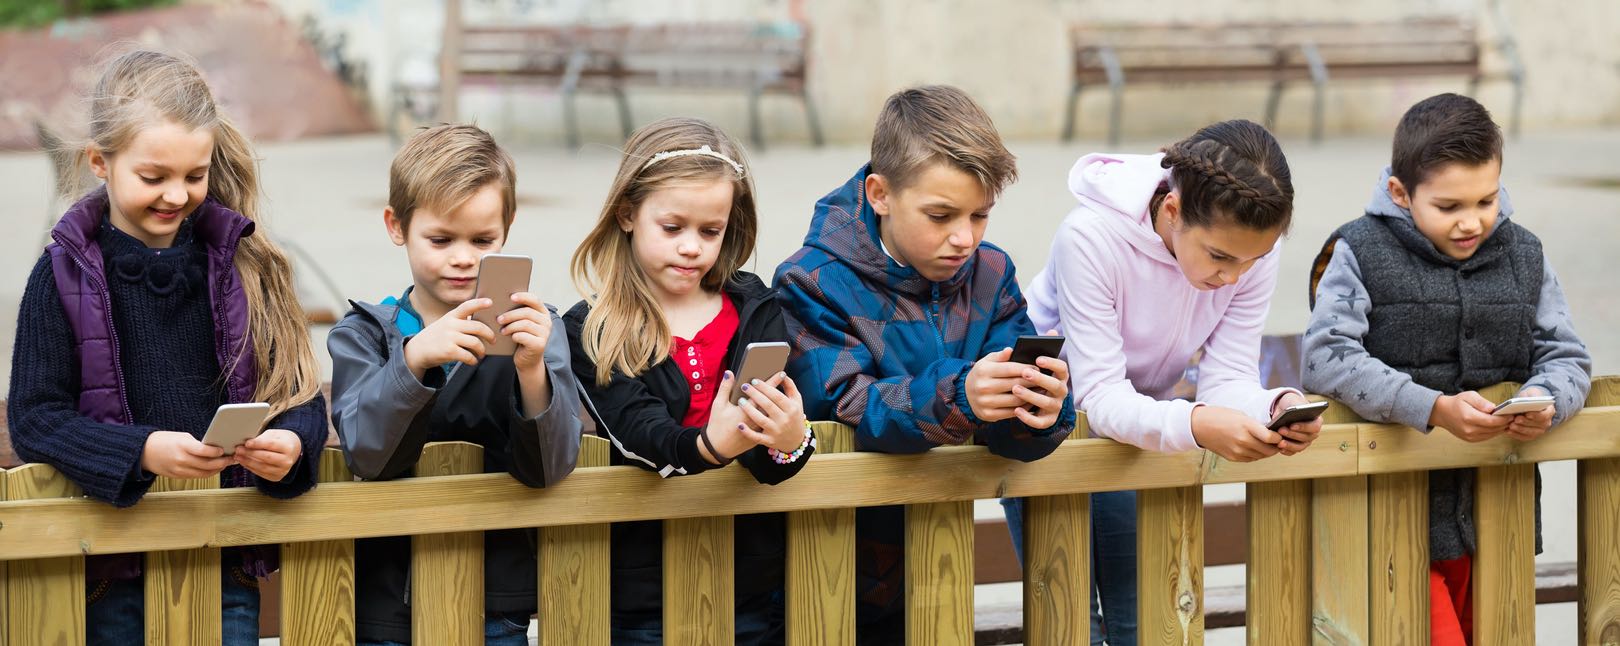 Billigaste mobilabonnemang för barn finns ofta hos lågprisoperatörerna.